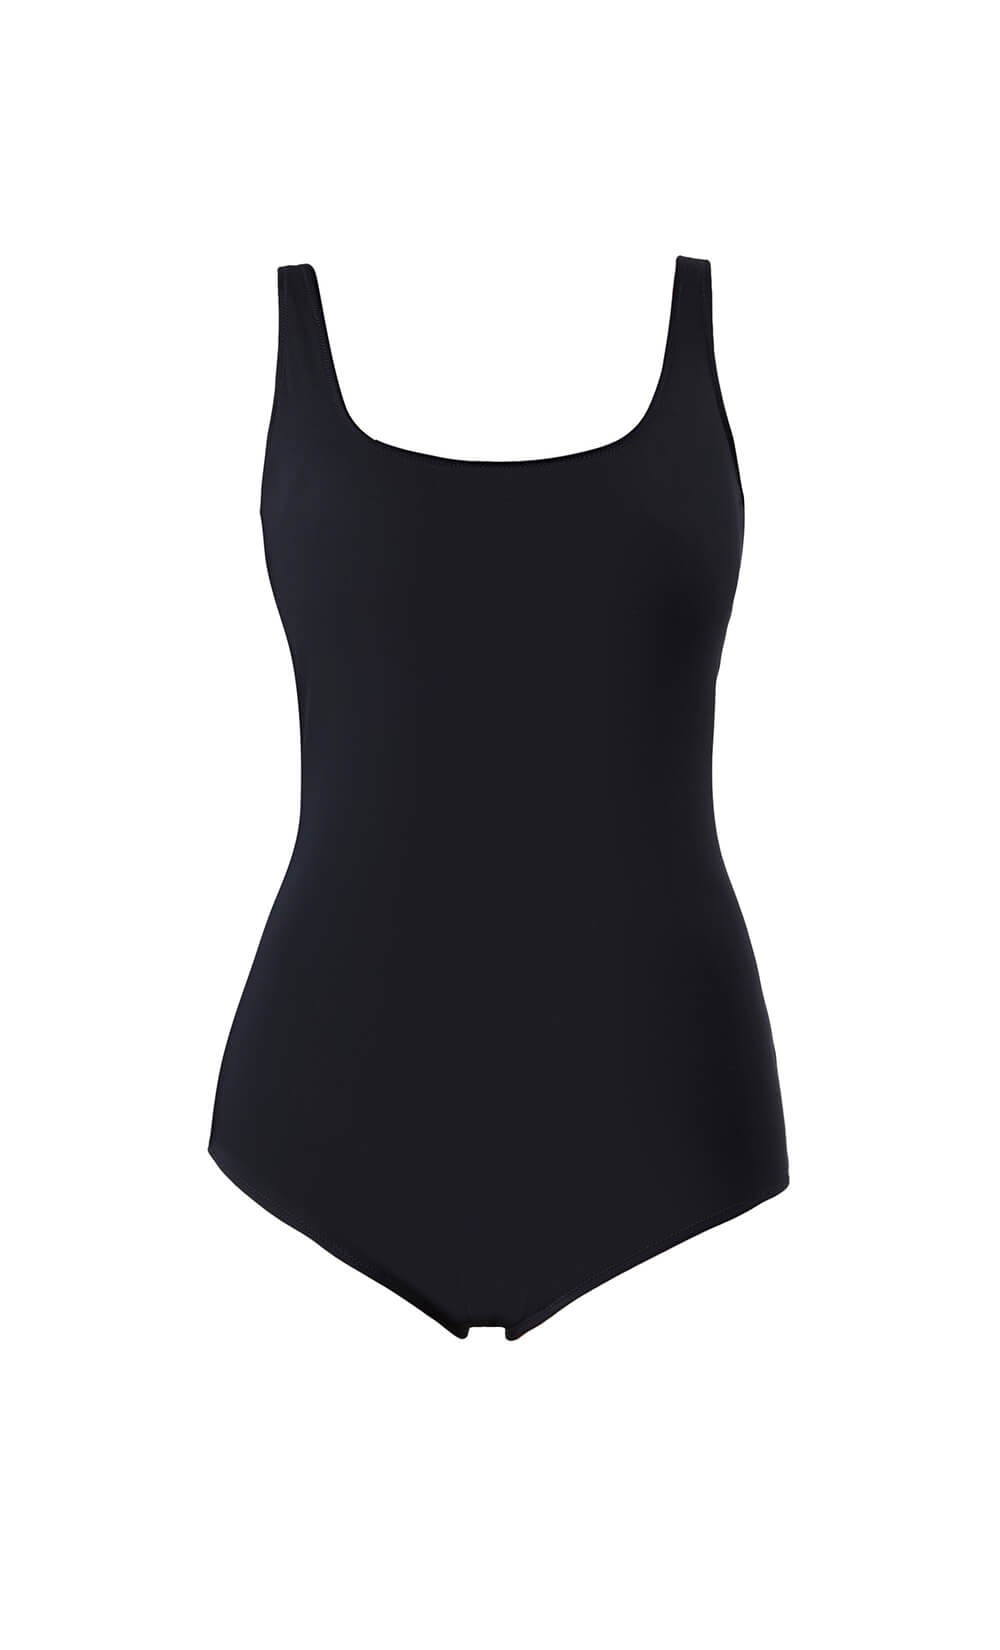 Black Bodysuit / Swimsuit  